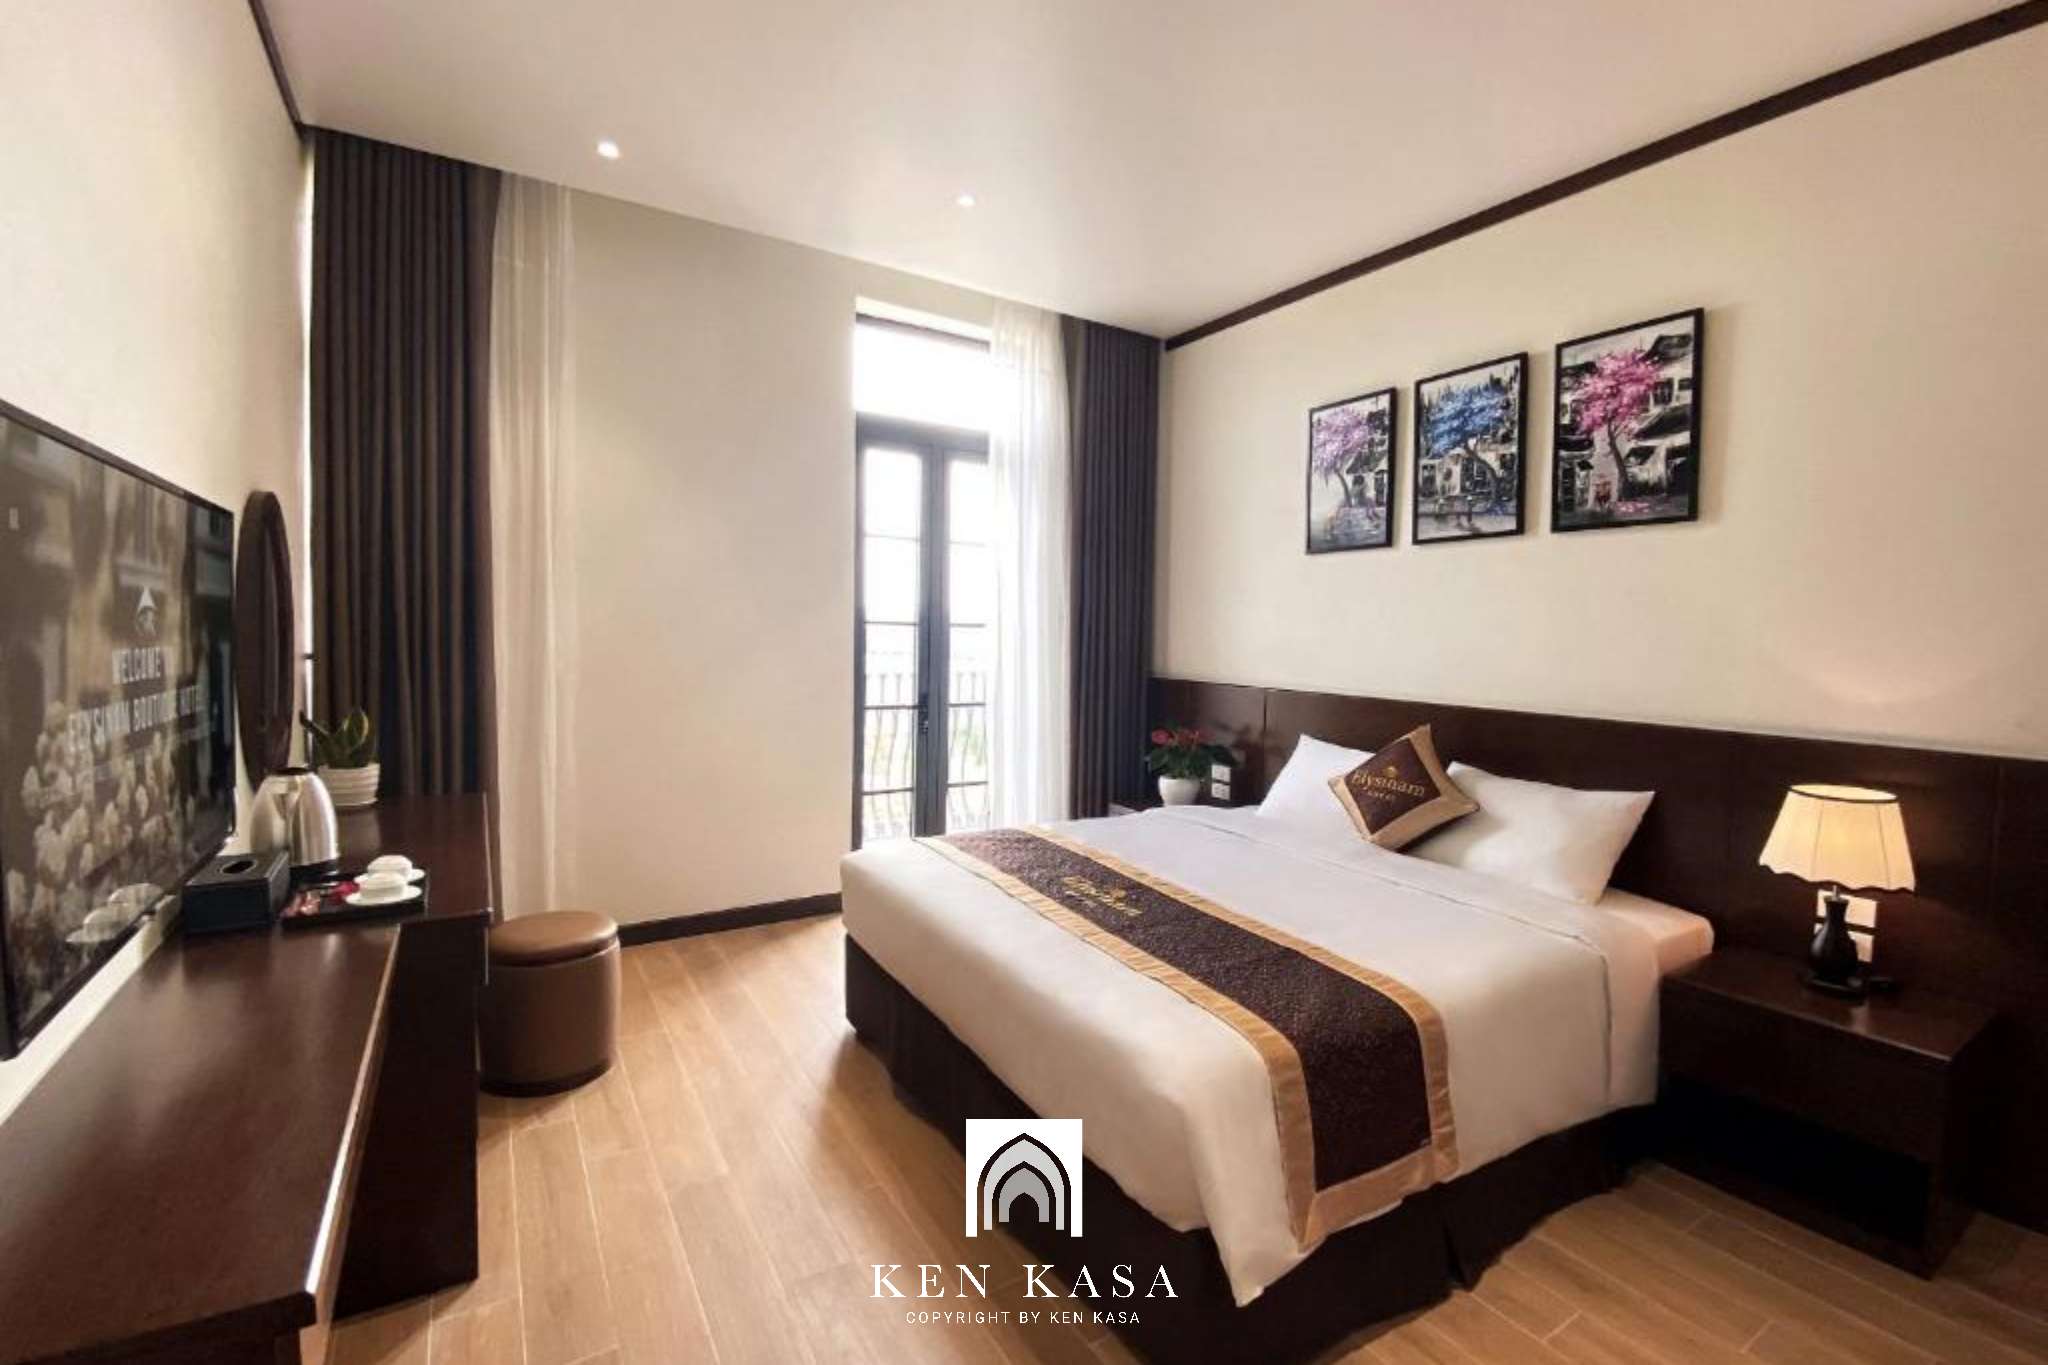 Đây là hạng phòng Deluxe King với chiếc giường đôi cỡ lớn sẽ giúp du khách có trải nghiệm thoải mái tại Elysinam